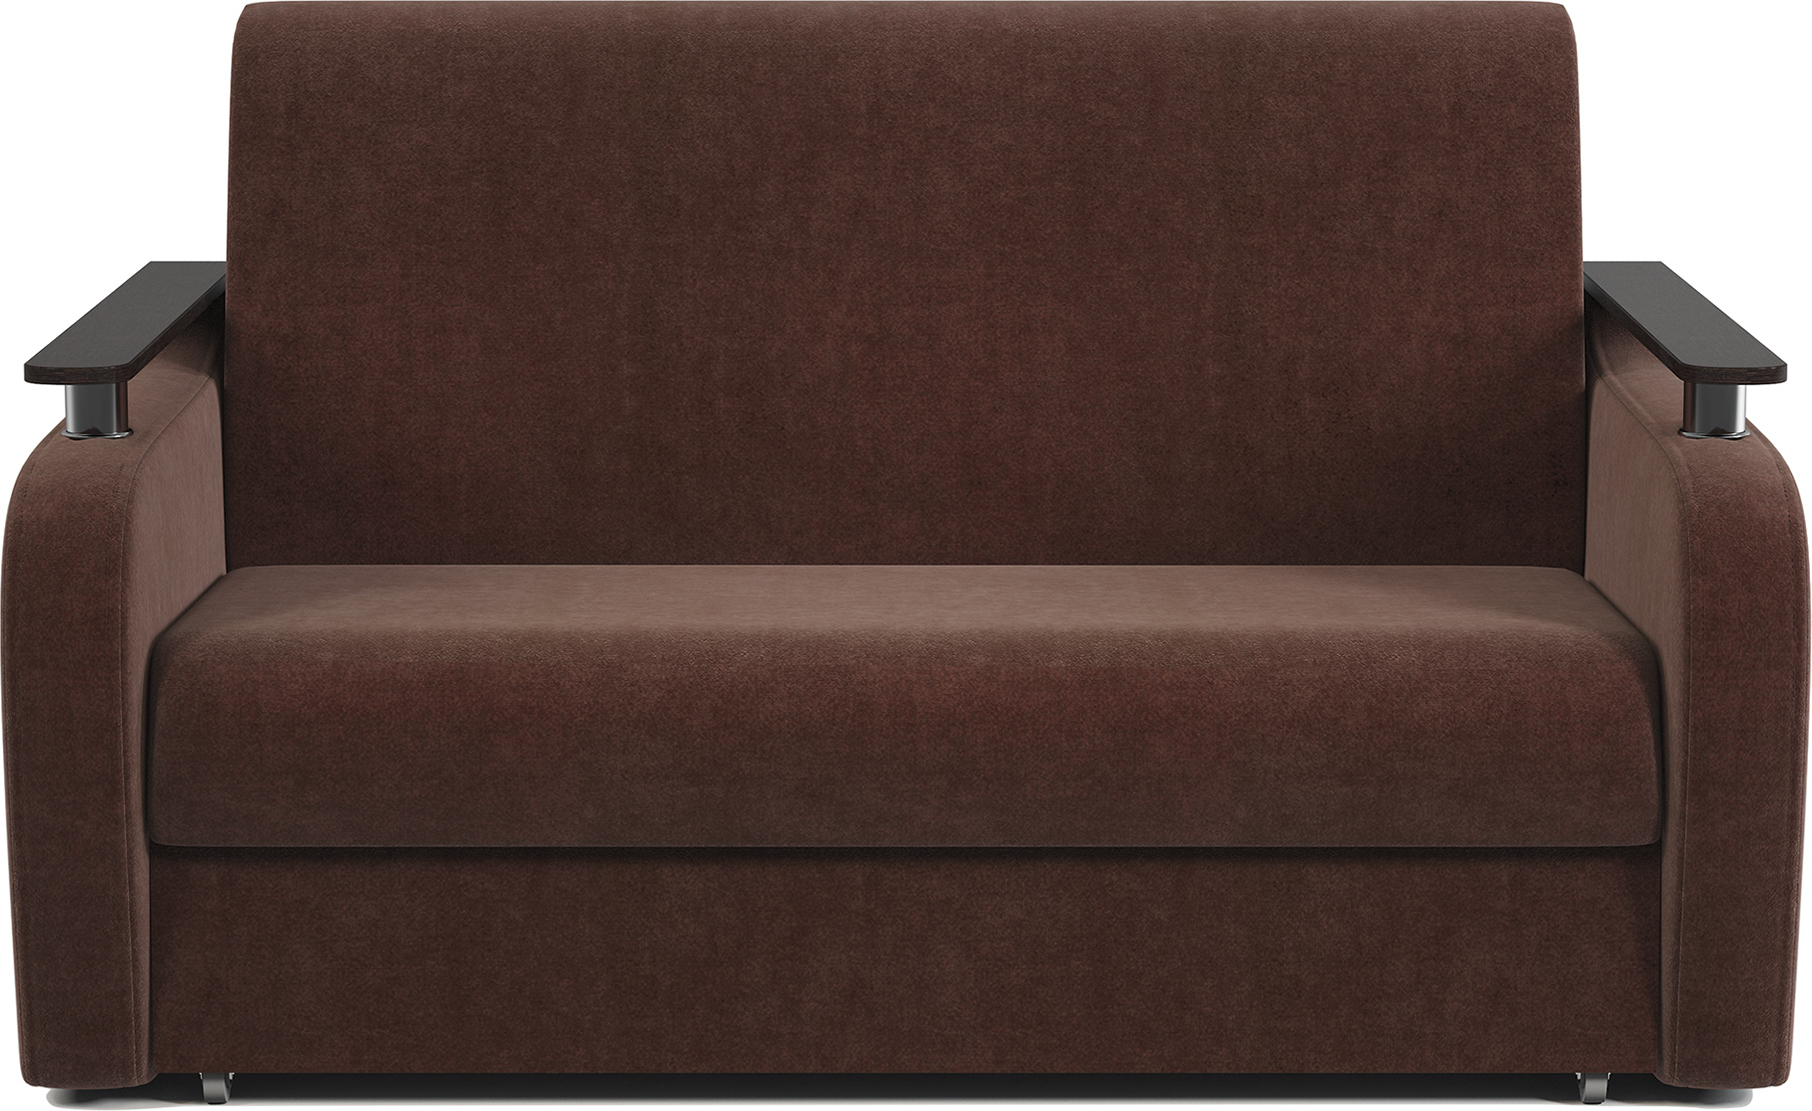 Диван Аккордеон купить в Оренбурге, недорого раскладной диван-кровать смеханизмом Аккордеон от производителя, цены, фото, каталог прямых